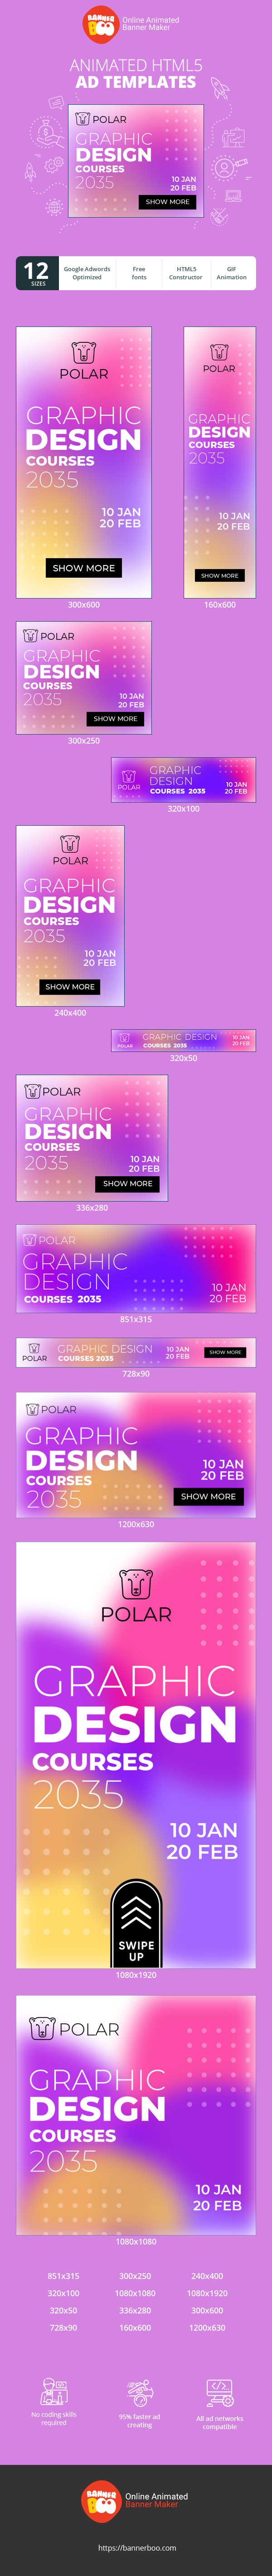 Graphic Design Courses 2035 — 10 Jan 20 Feb